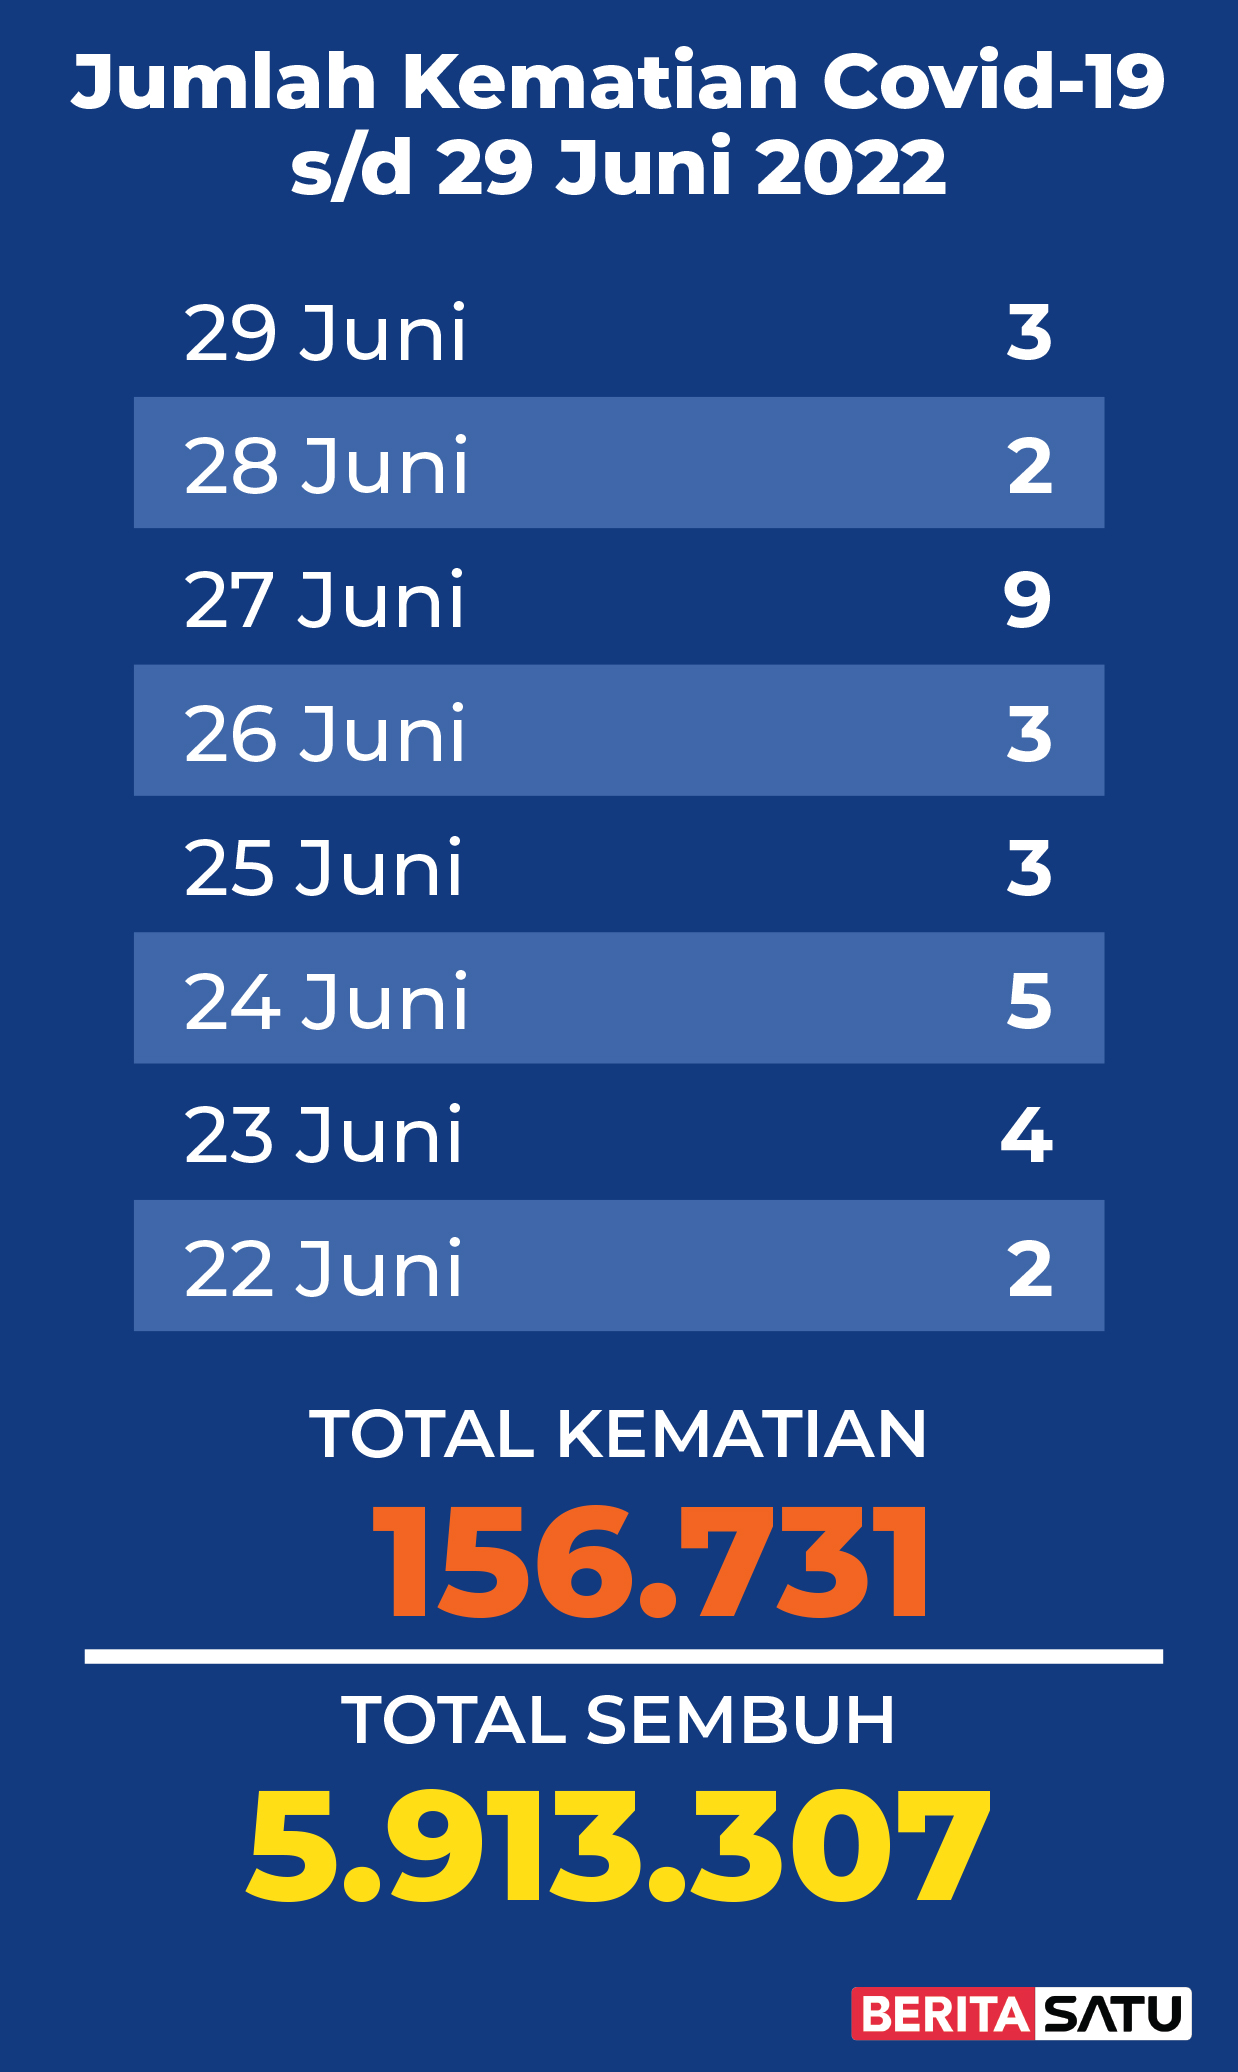 Data Kematian Covid-19 di Indonesia sampai 29 Juni 2022